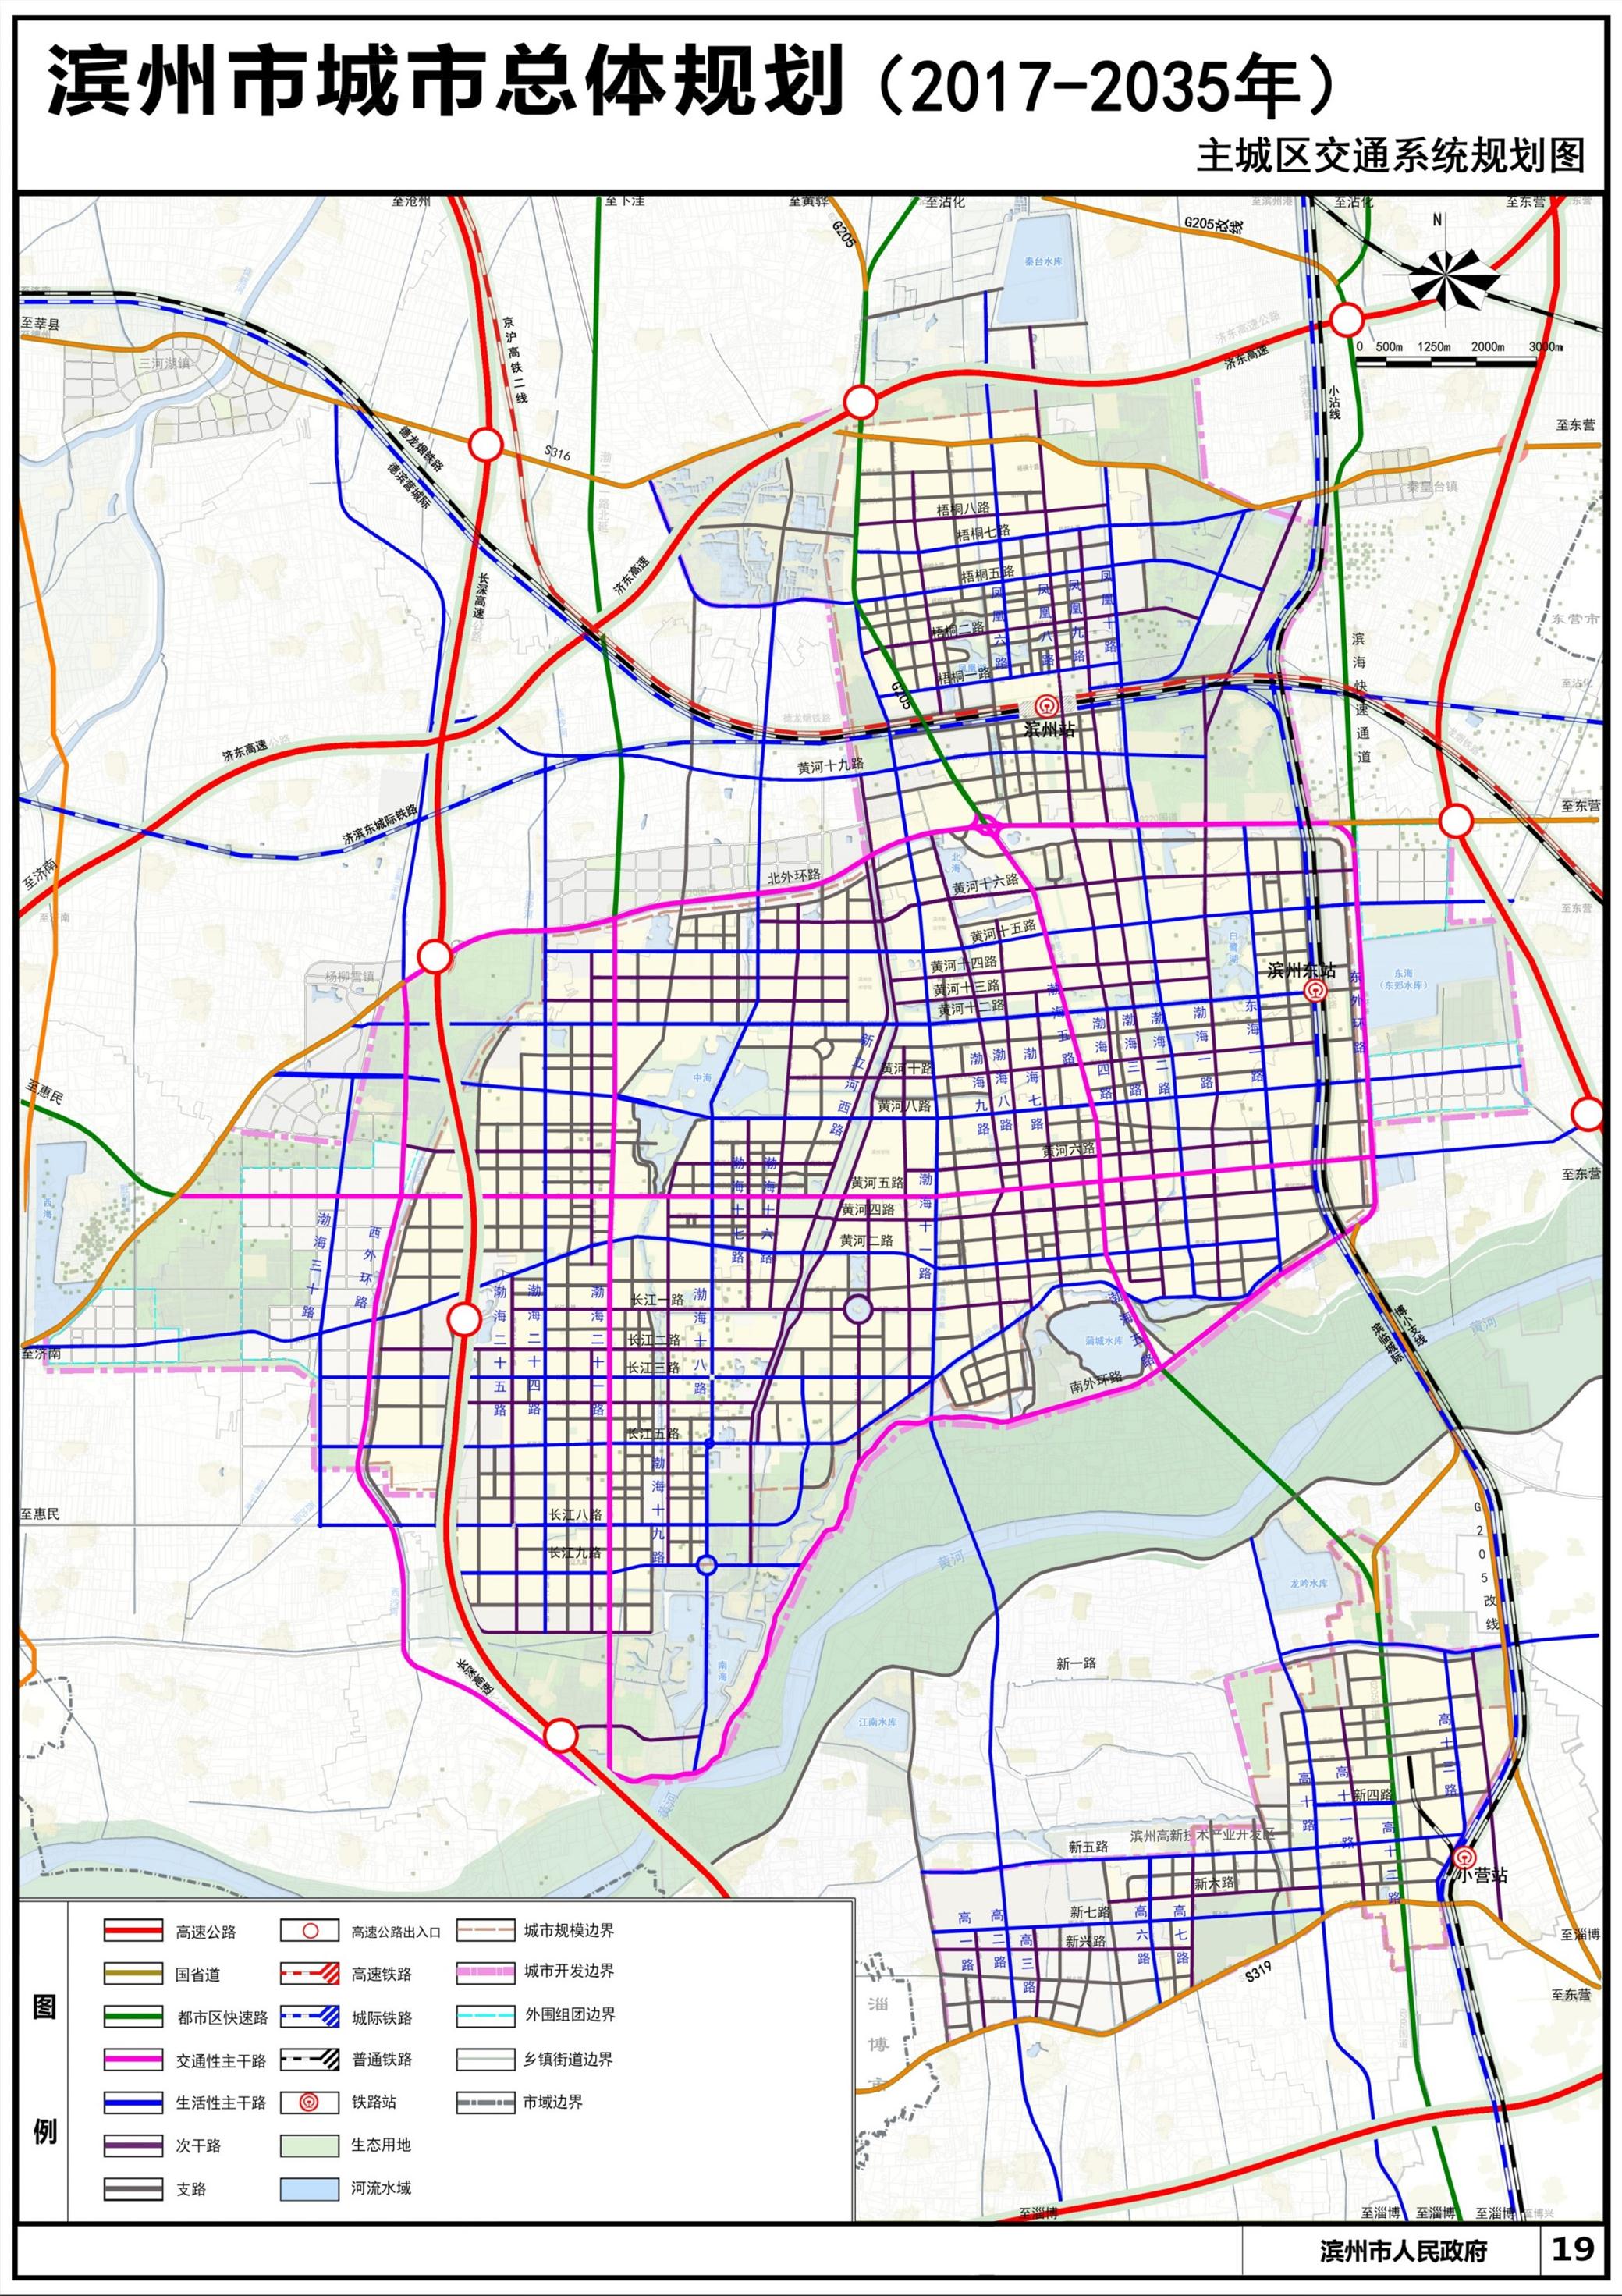 滨州市城市总体规划20172035年草案公示和征集